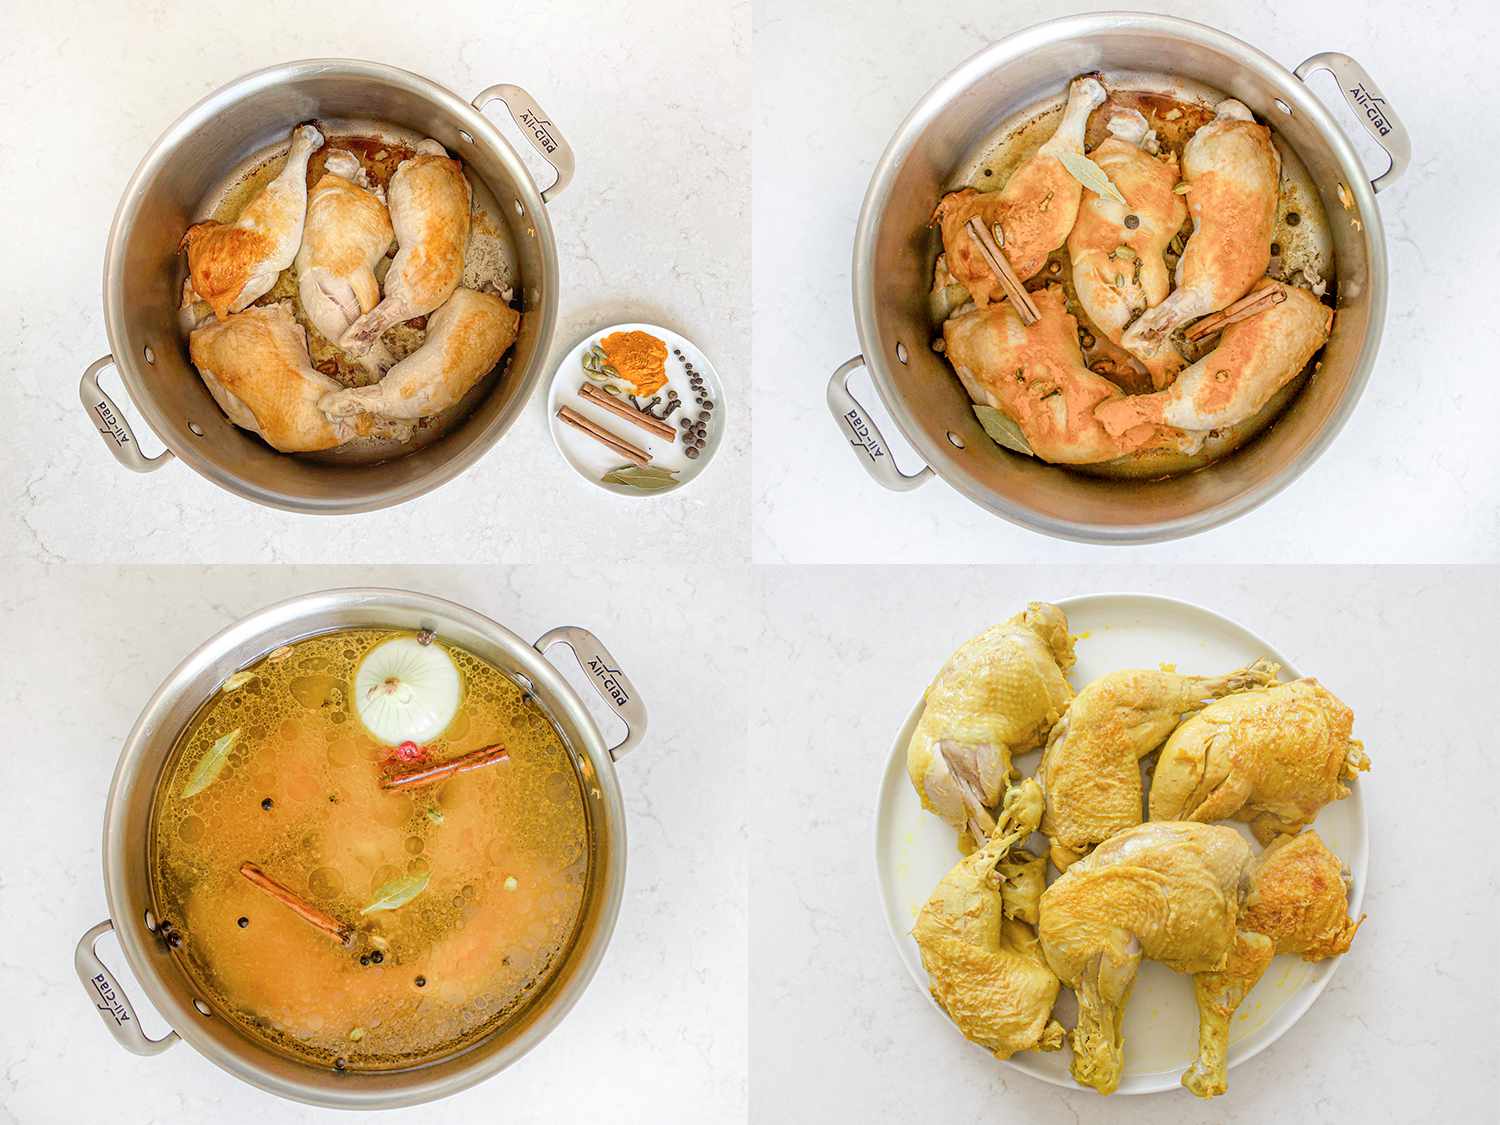 四幅图像拼贴。从左上起顺时针方向:锅里煮熟的鸡肉和香料放在一边的小盘子里;鸡在锅上撒满香料;鸡肉加香料、洋葱和肉汤;煮熟的鸡从锅里拿出来，然后装盘。